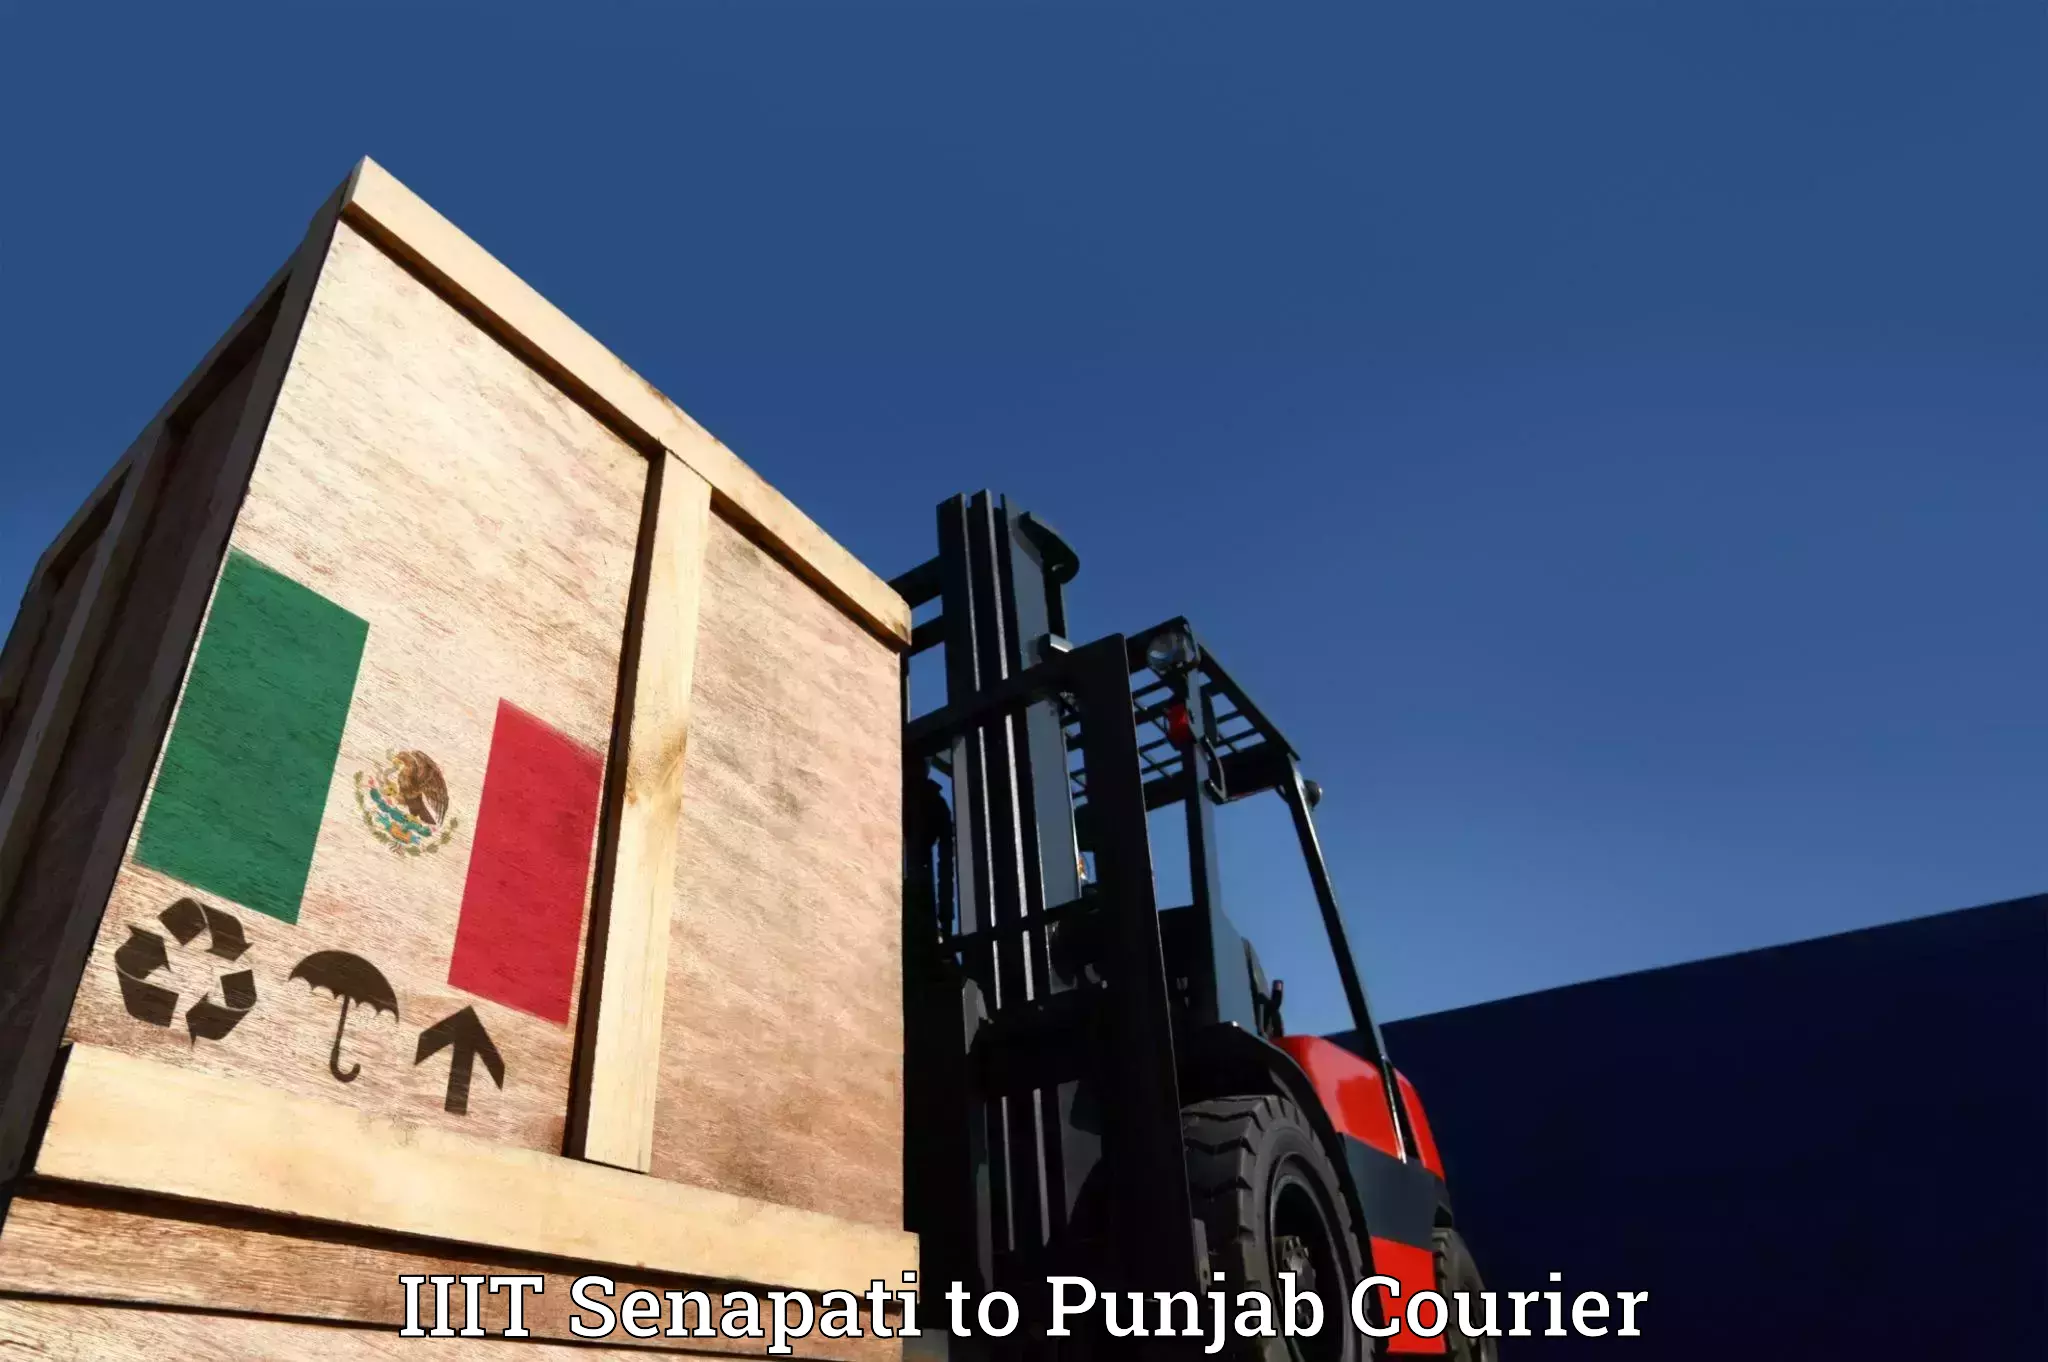 Furniture moving experts IIIT Senapati to Punjab